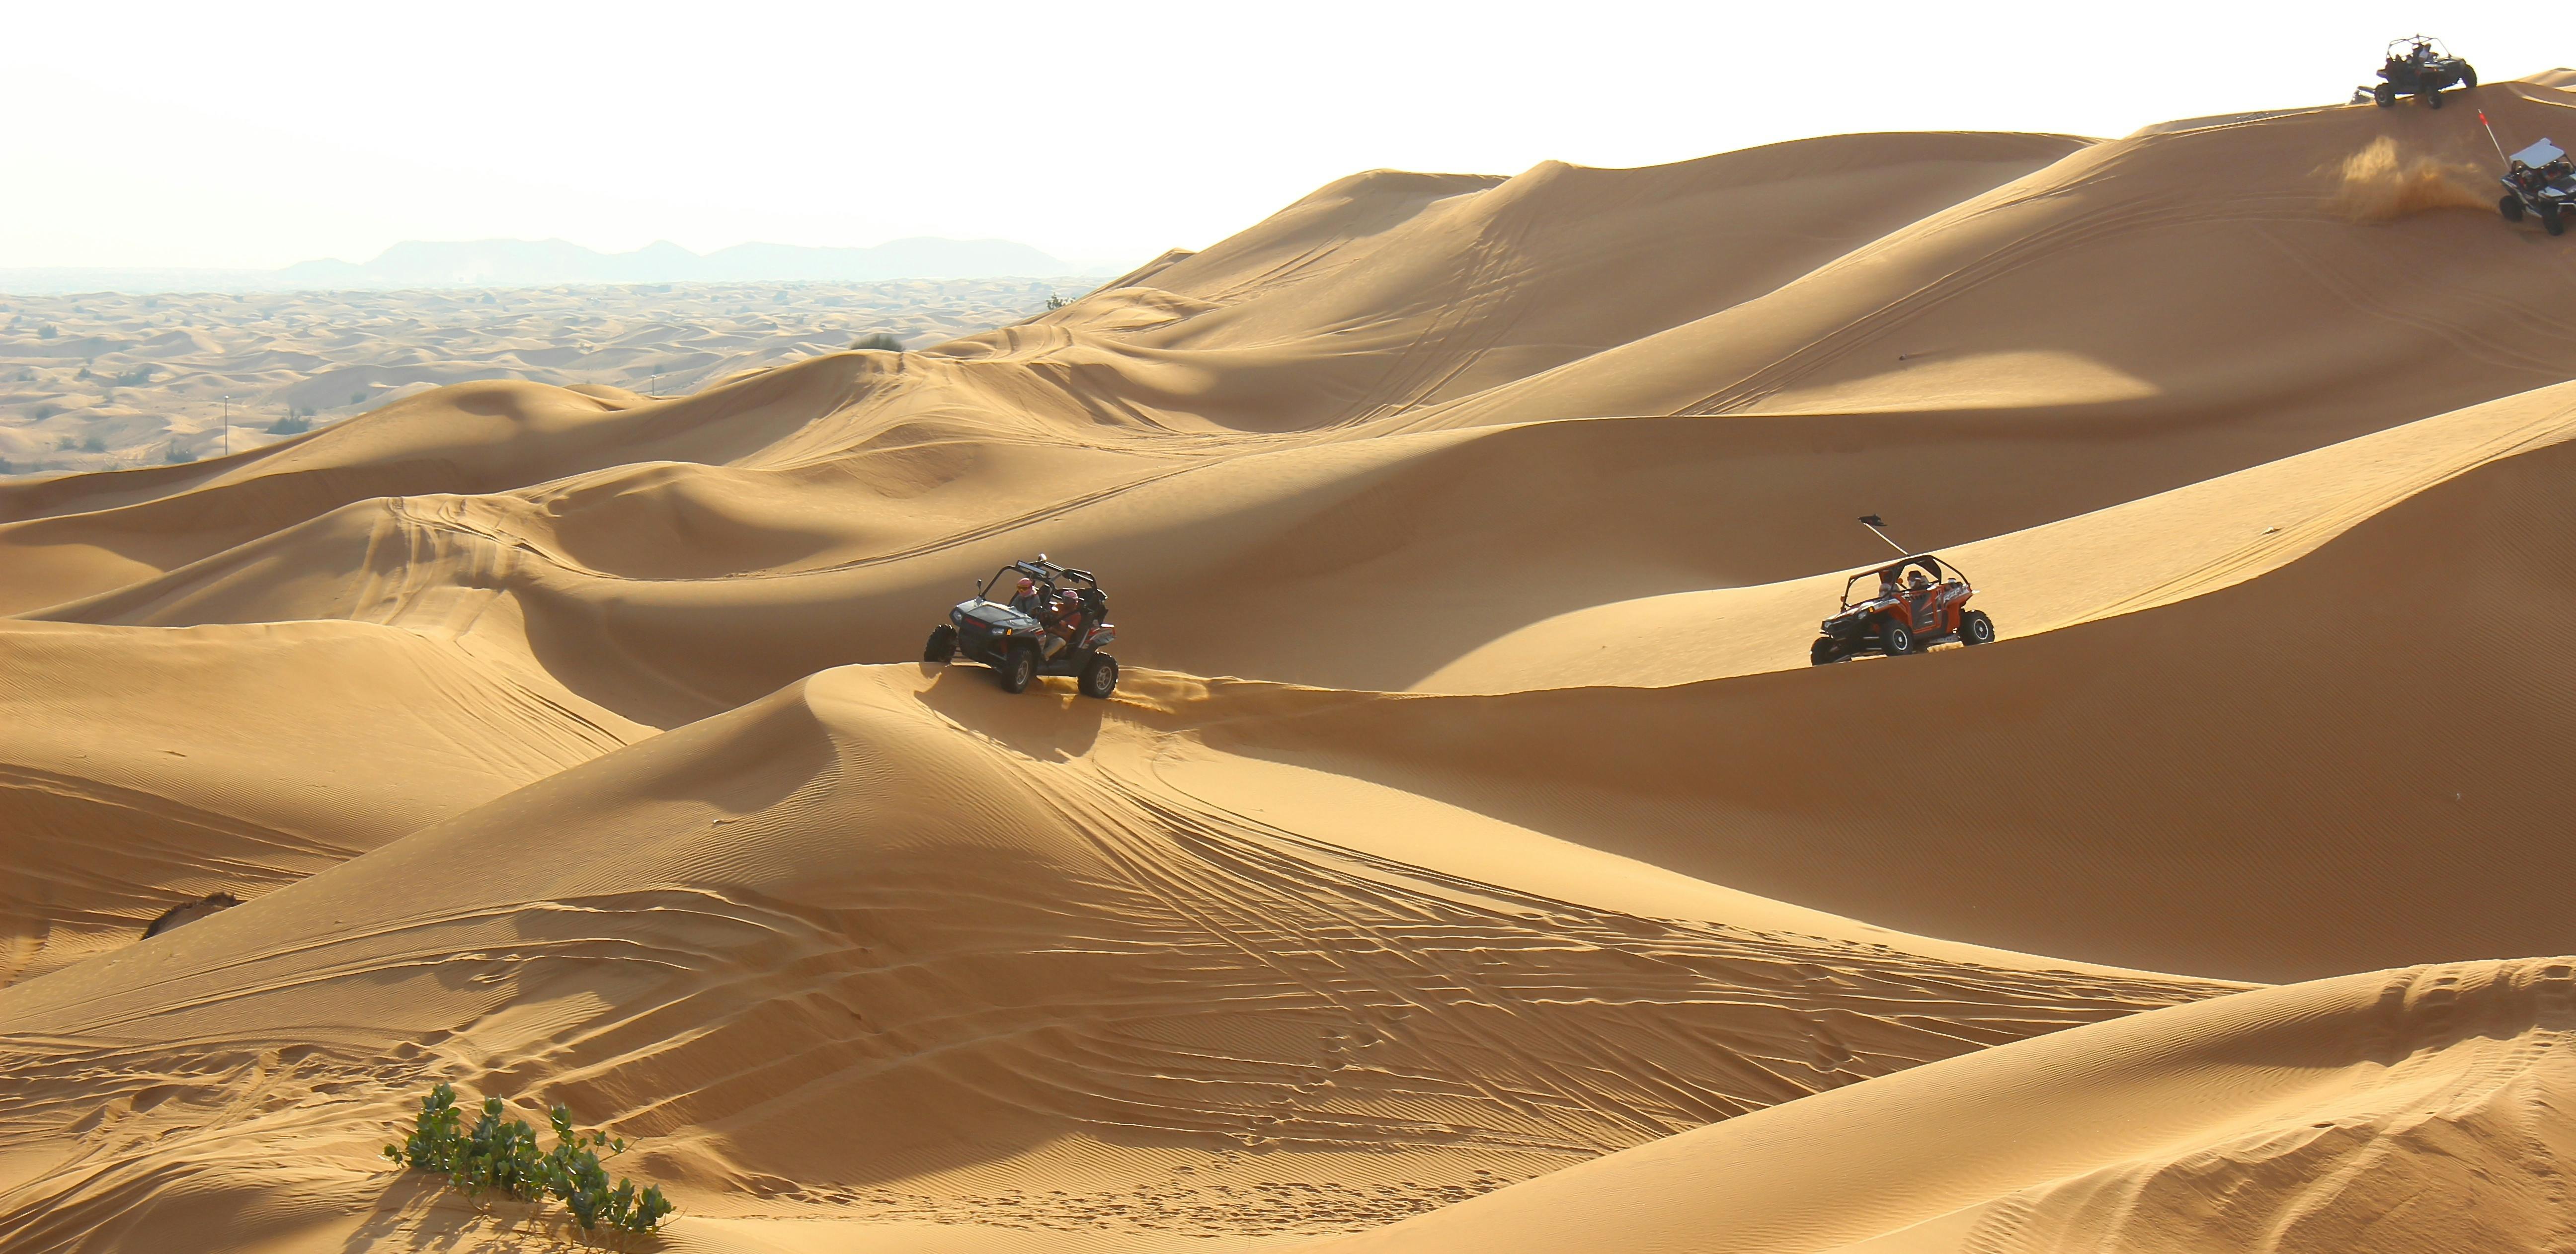 Desert adventure sports from Dubai Musement